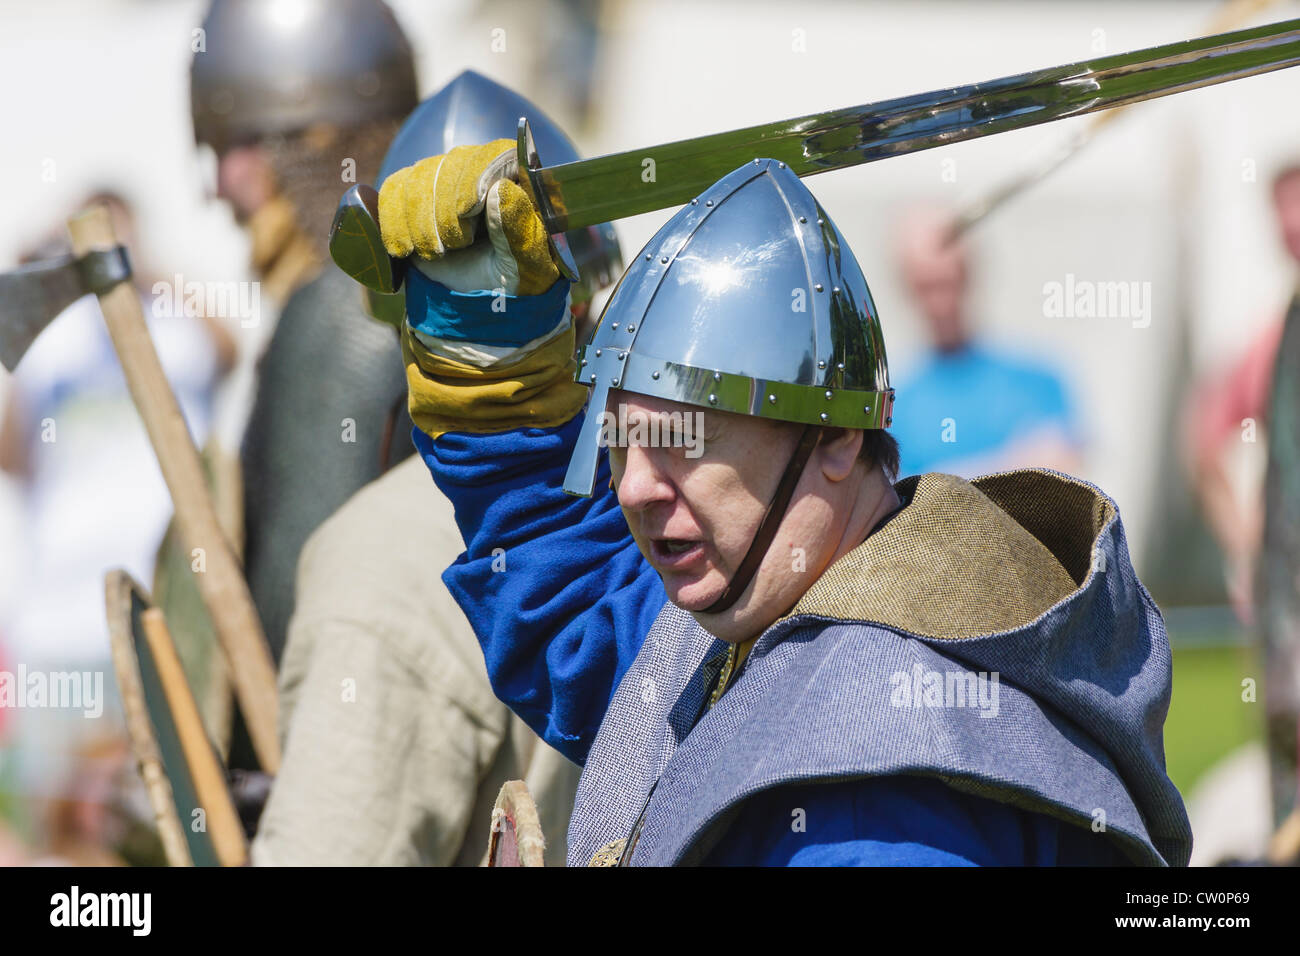 Mann in mittelalterlichen Kostümen Replik während Viking / angelsächsischen Reenactment. St Albans, UK. Mai 2012 Stockfoto